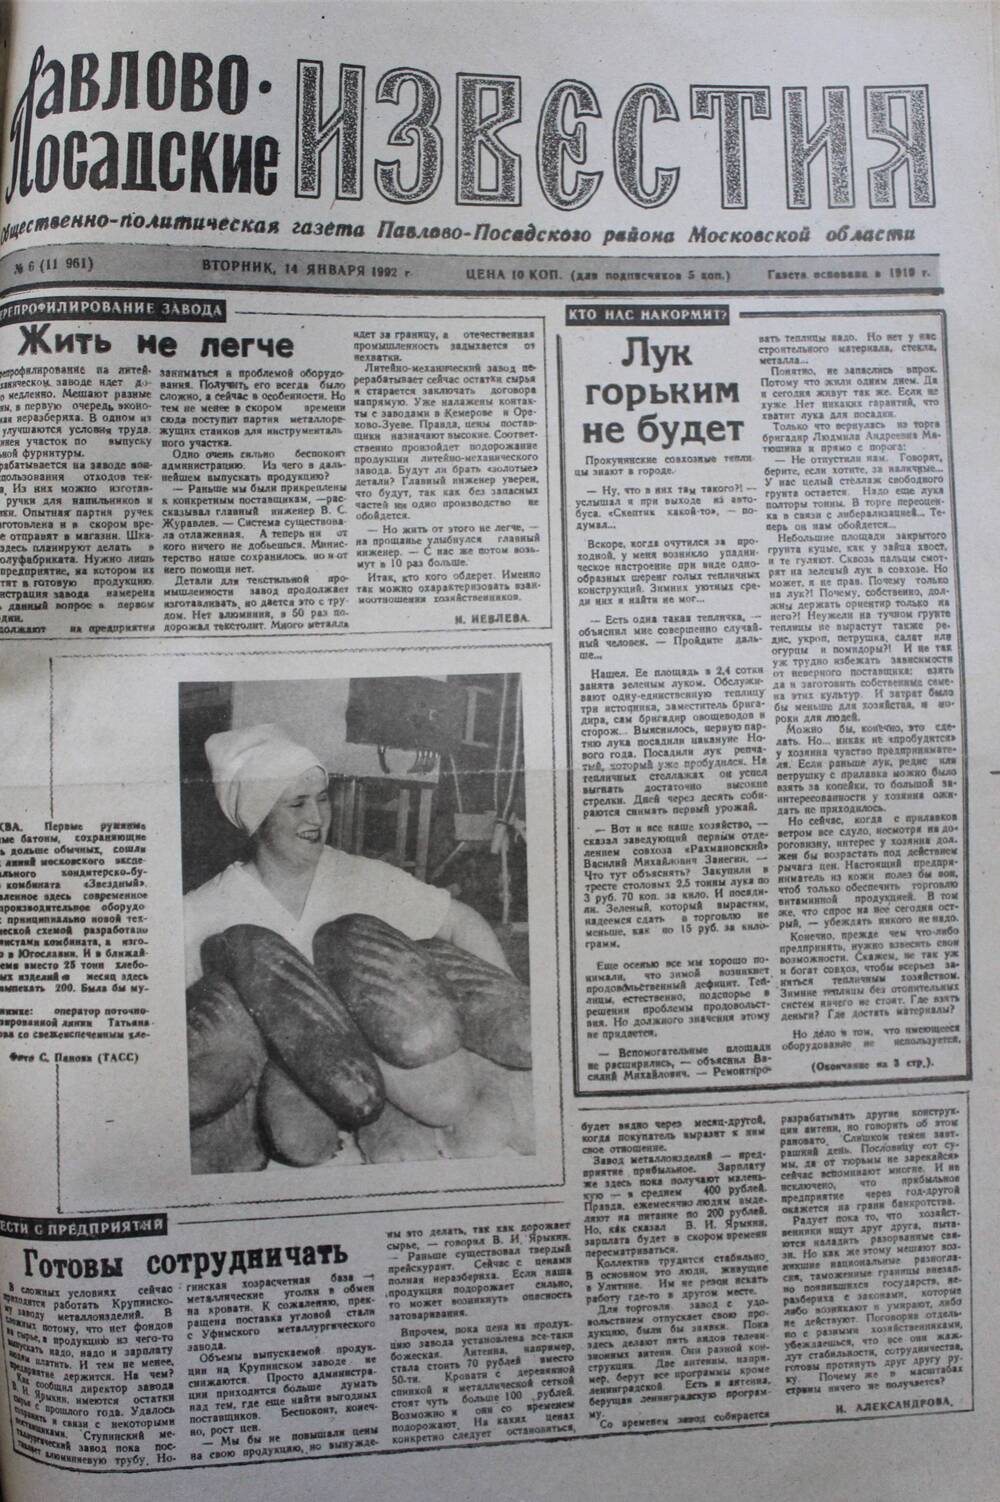 Газета Павлово-Посадские известия № 6 (11961)  от 14 января 1992 г.